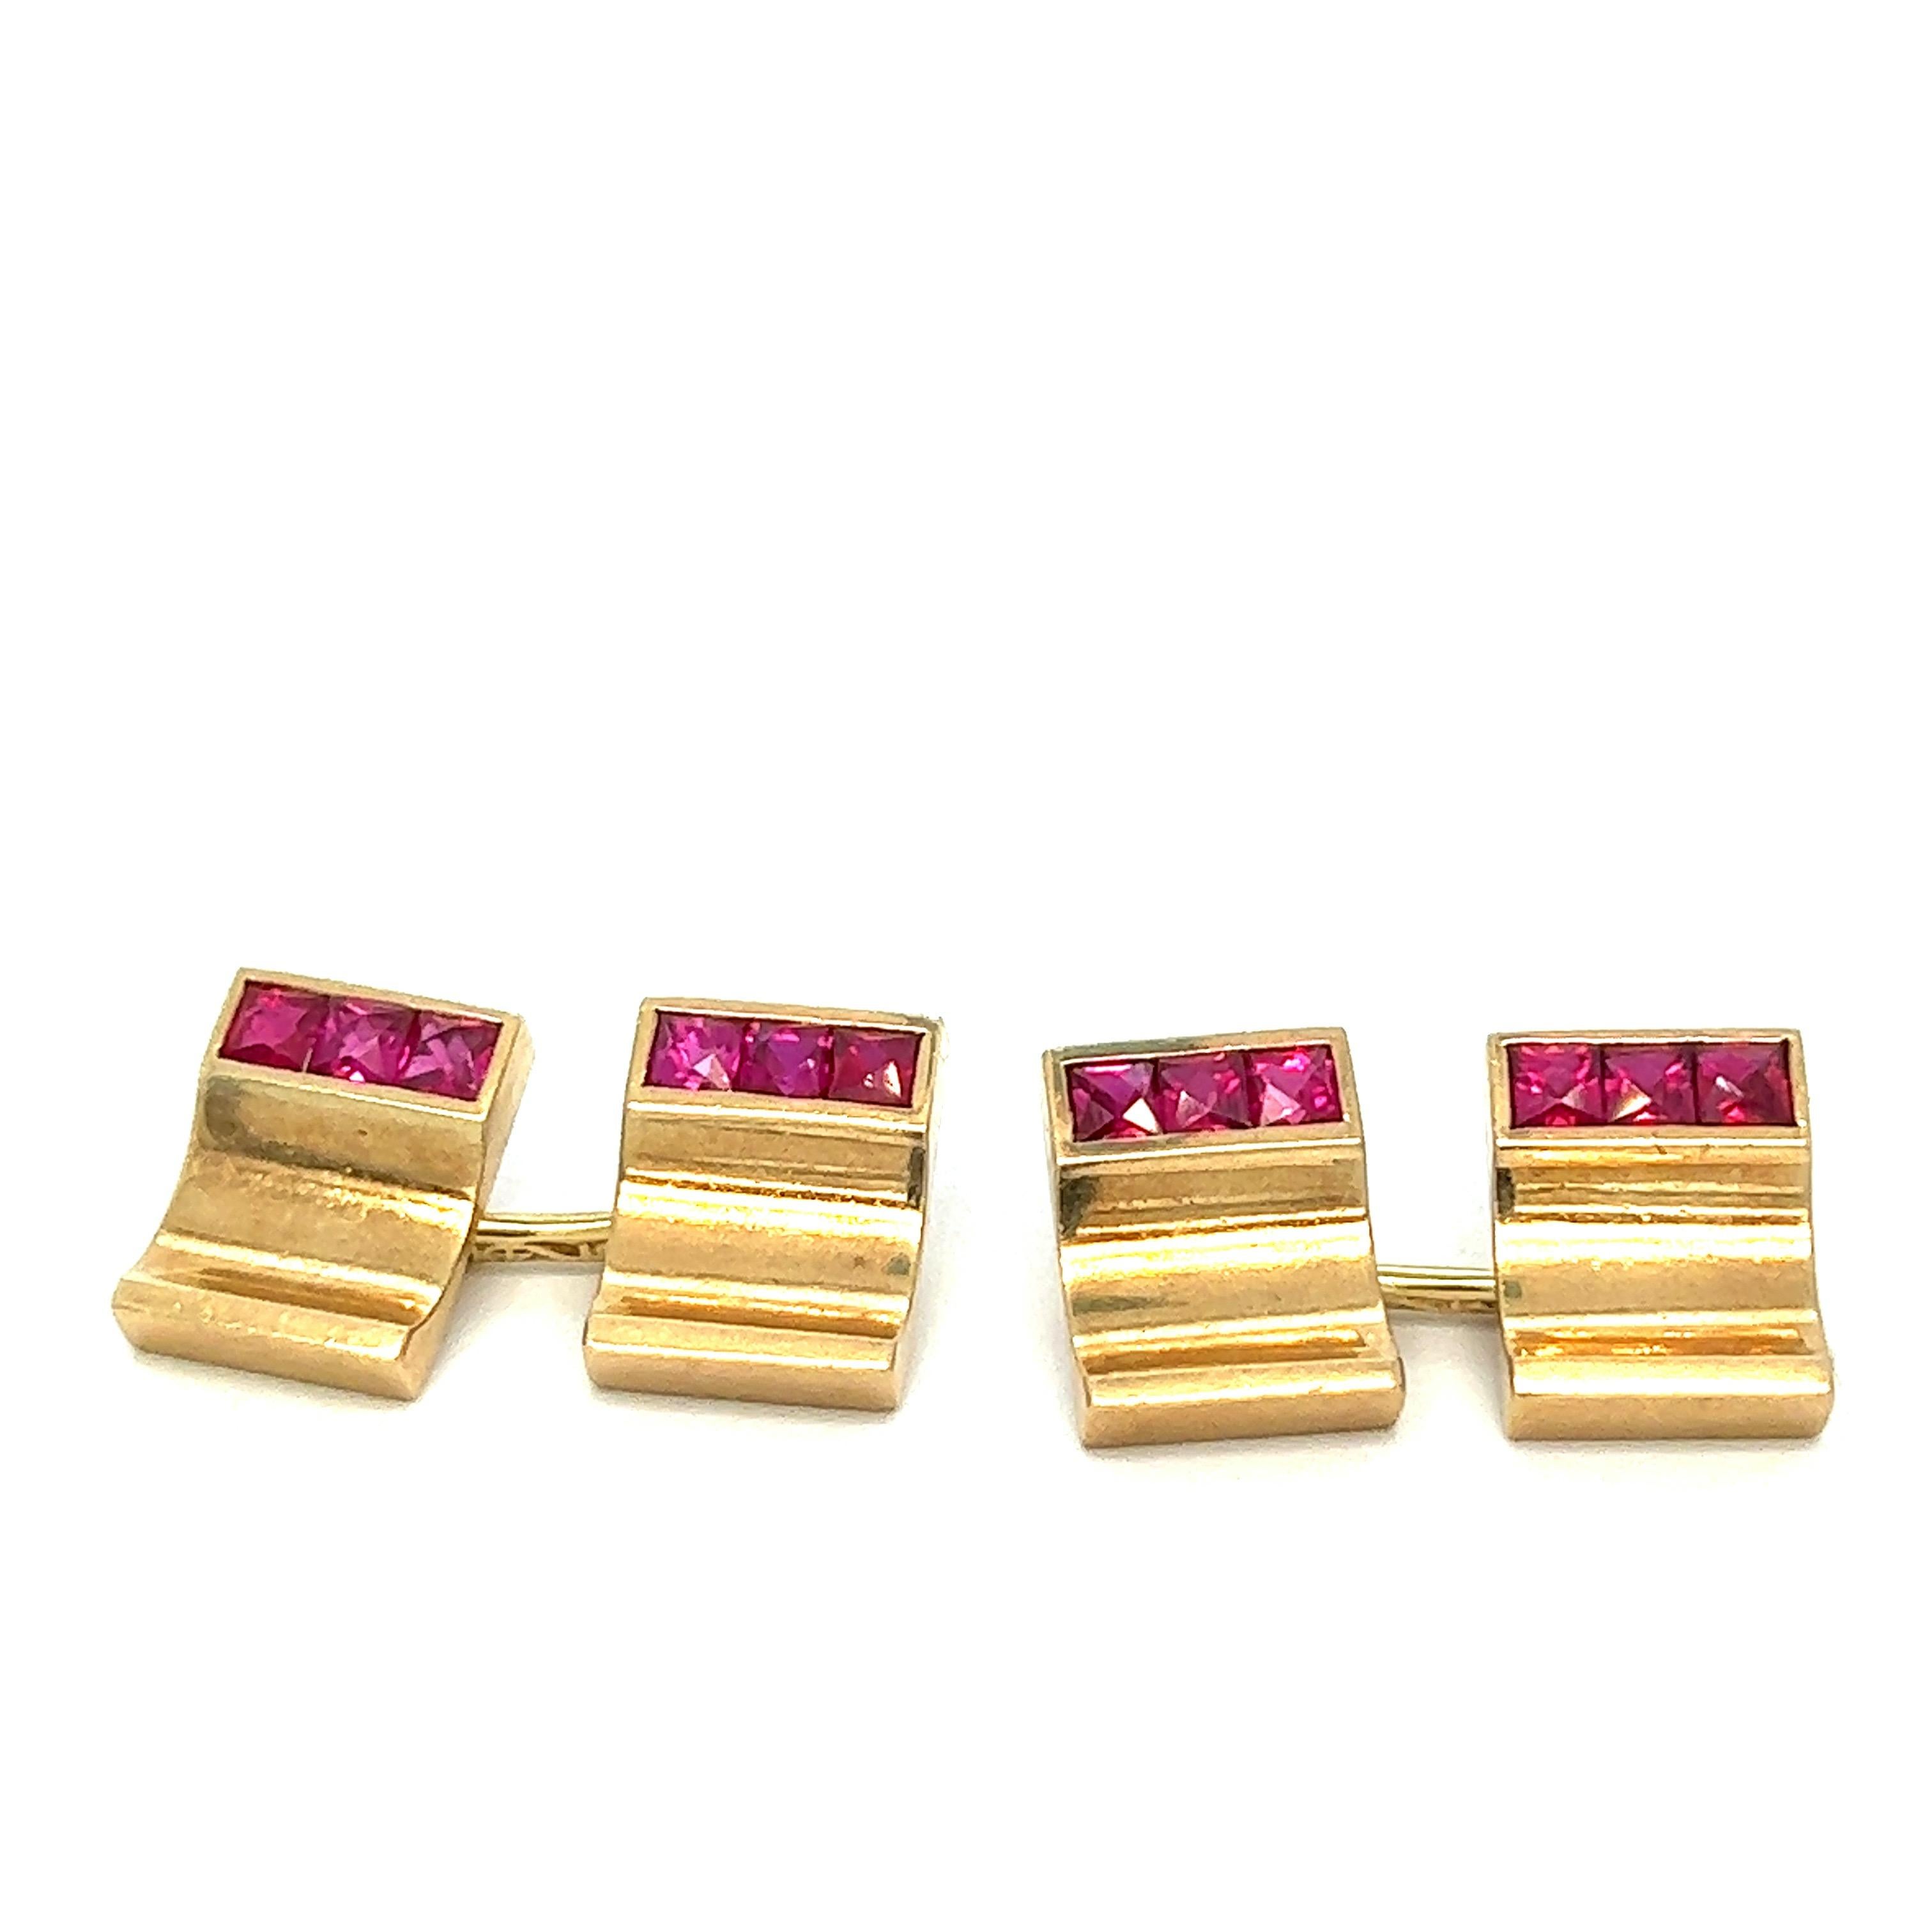 Boutons de manchette Art déco en or rubis 

Magnifiques pierres en rubis serties sur de l'or jaune 14 carats

Taille : largeur 13 mm, longueur 10 mm
Poids total : 15,4 grammes